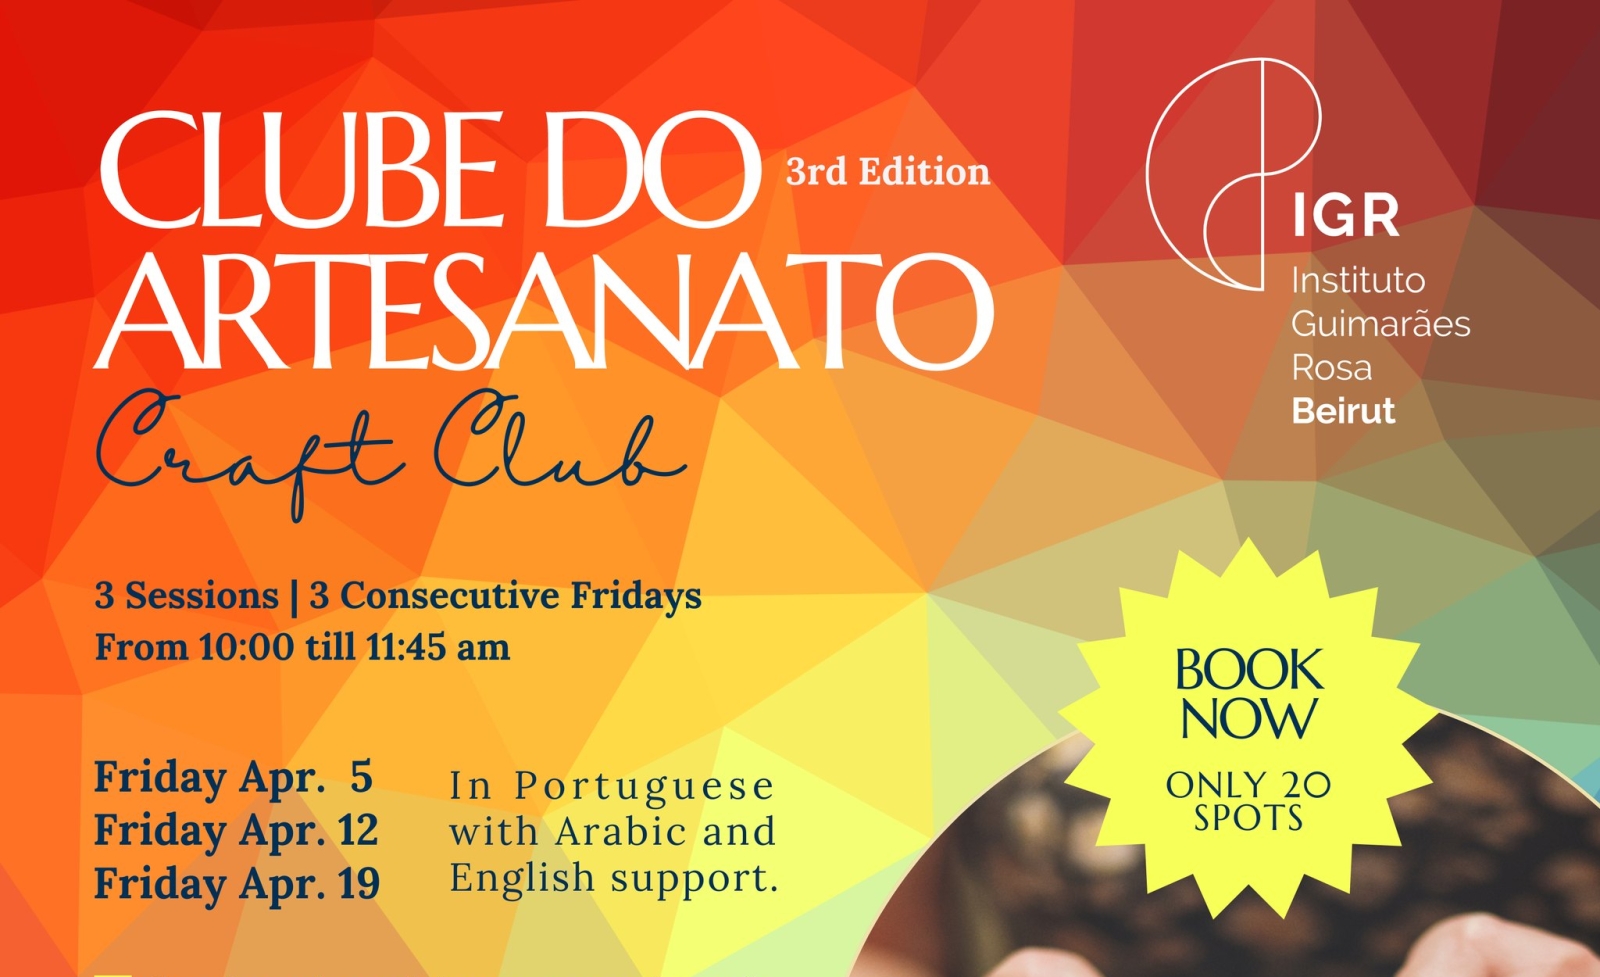 Brazilian Craft Club (Clube do Artesanato) - 3rd edition